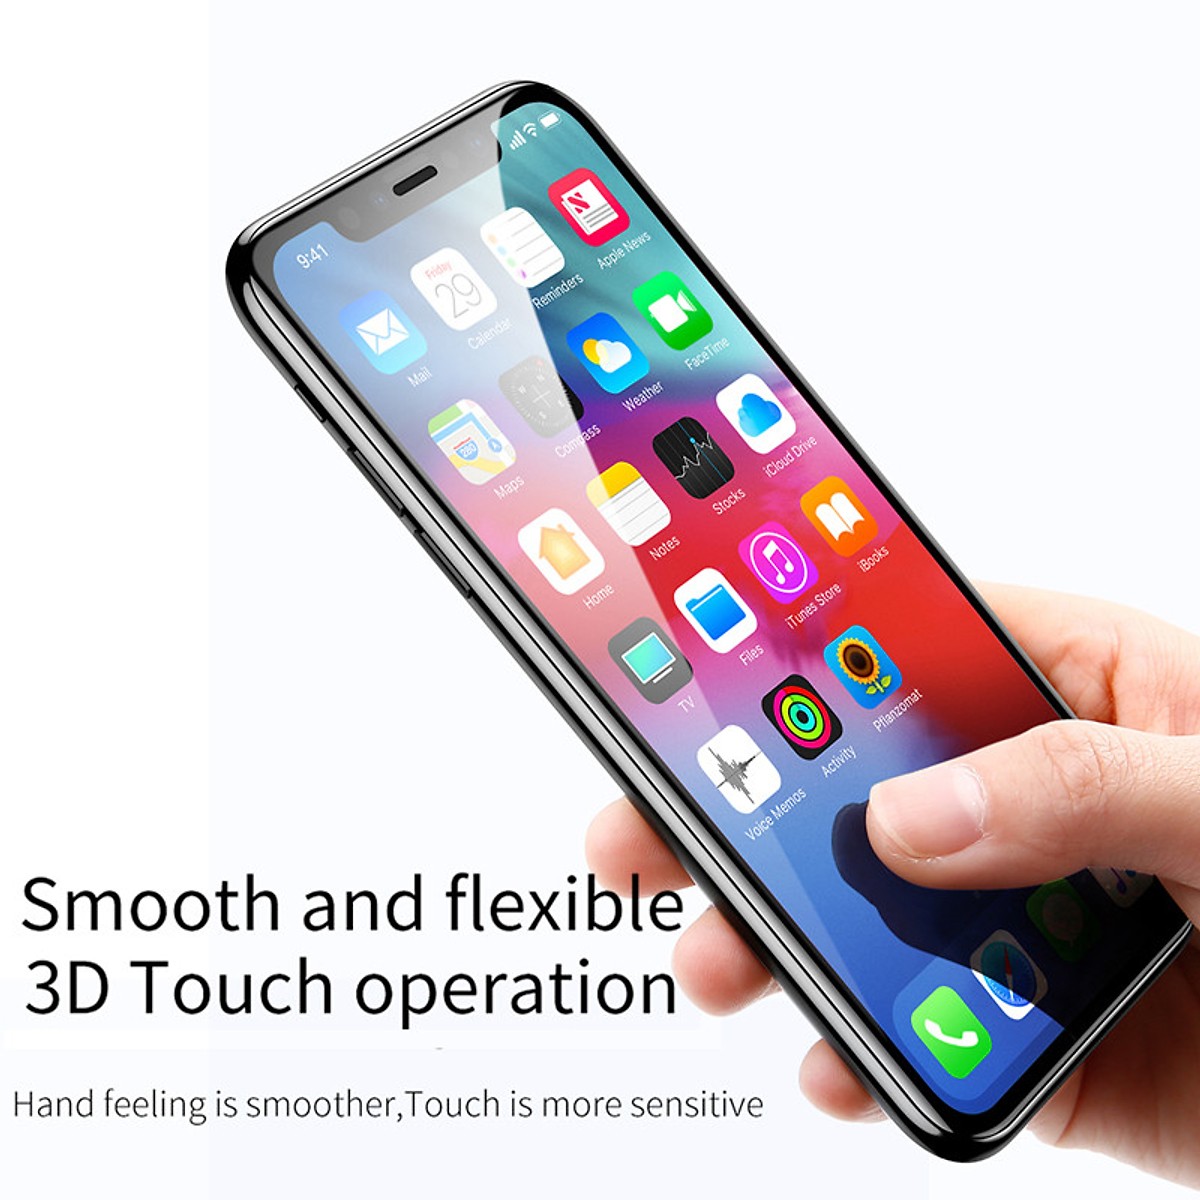 Bộ 2 Miếng dán kính cường lực Full 3D cho iPhone 11 Pro Max / iPhone Xs Max hiệu Baseus bảo vệ màng loa chống bụi (mỏng 0.3mm, Full màn 3D, Phủ Nano) - Hàng nhập khẩu